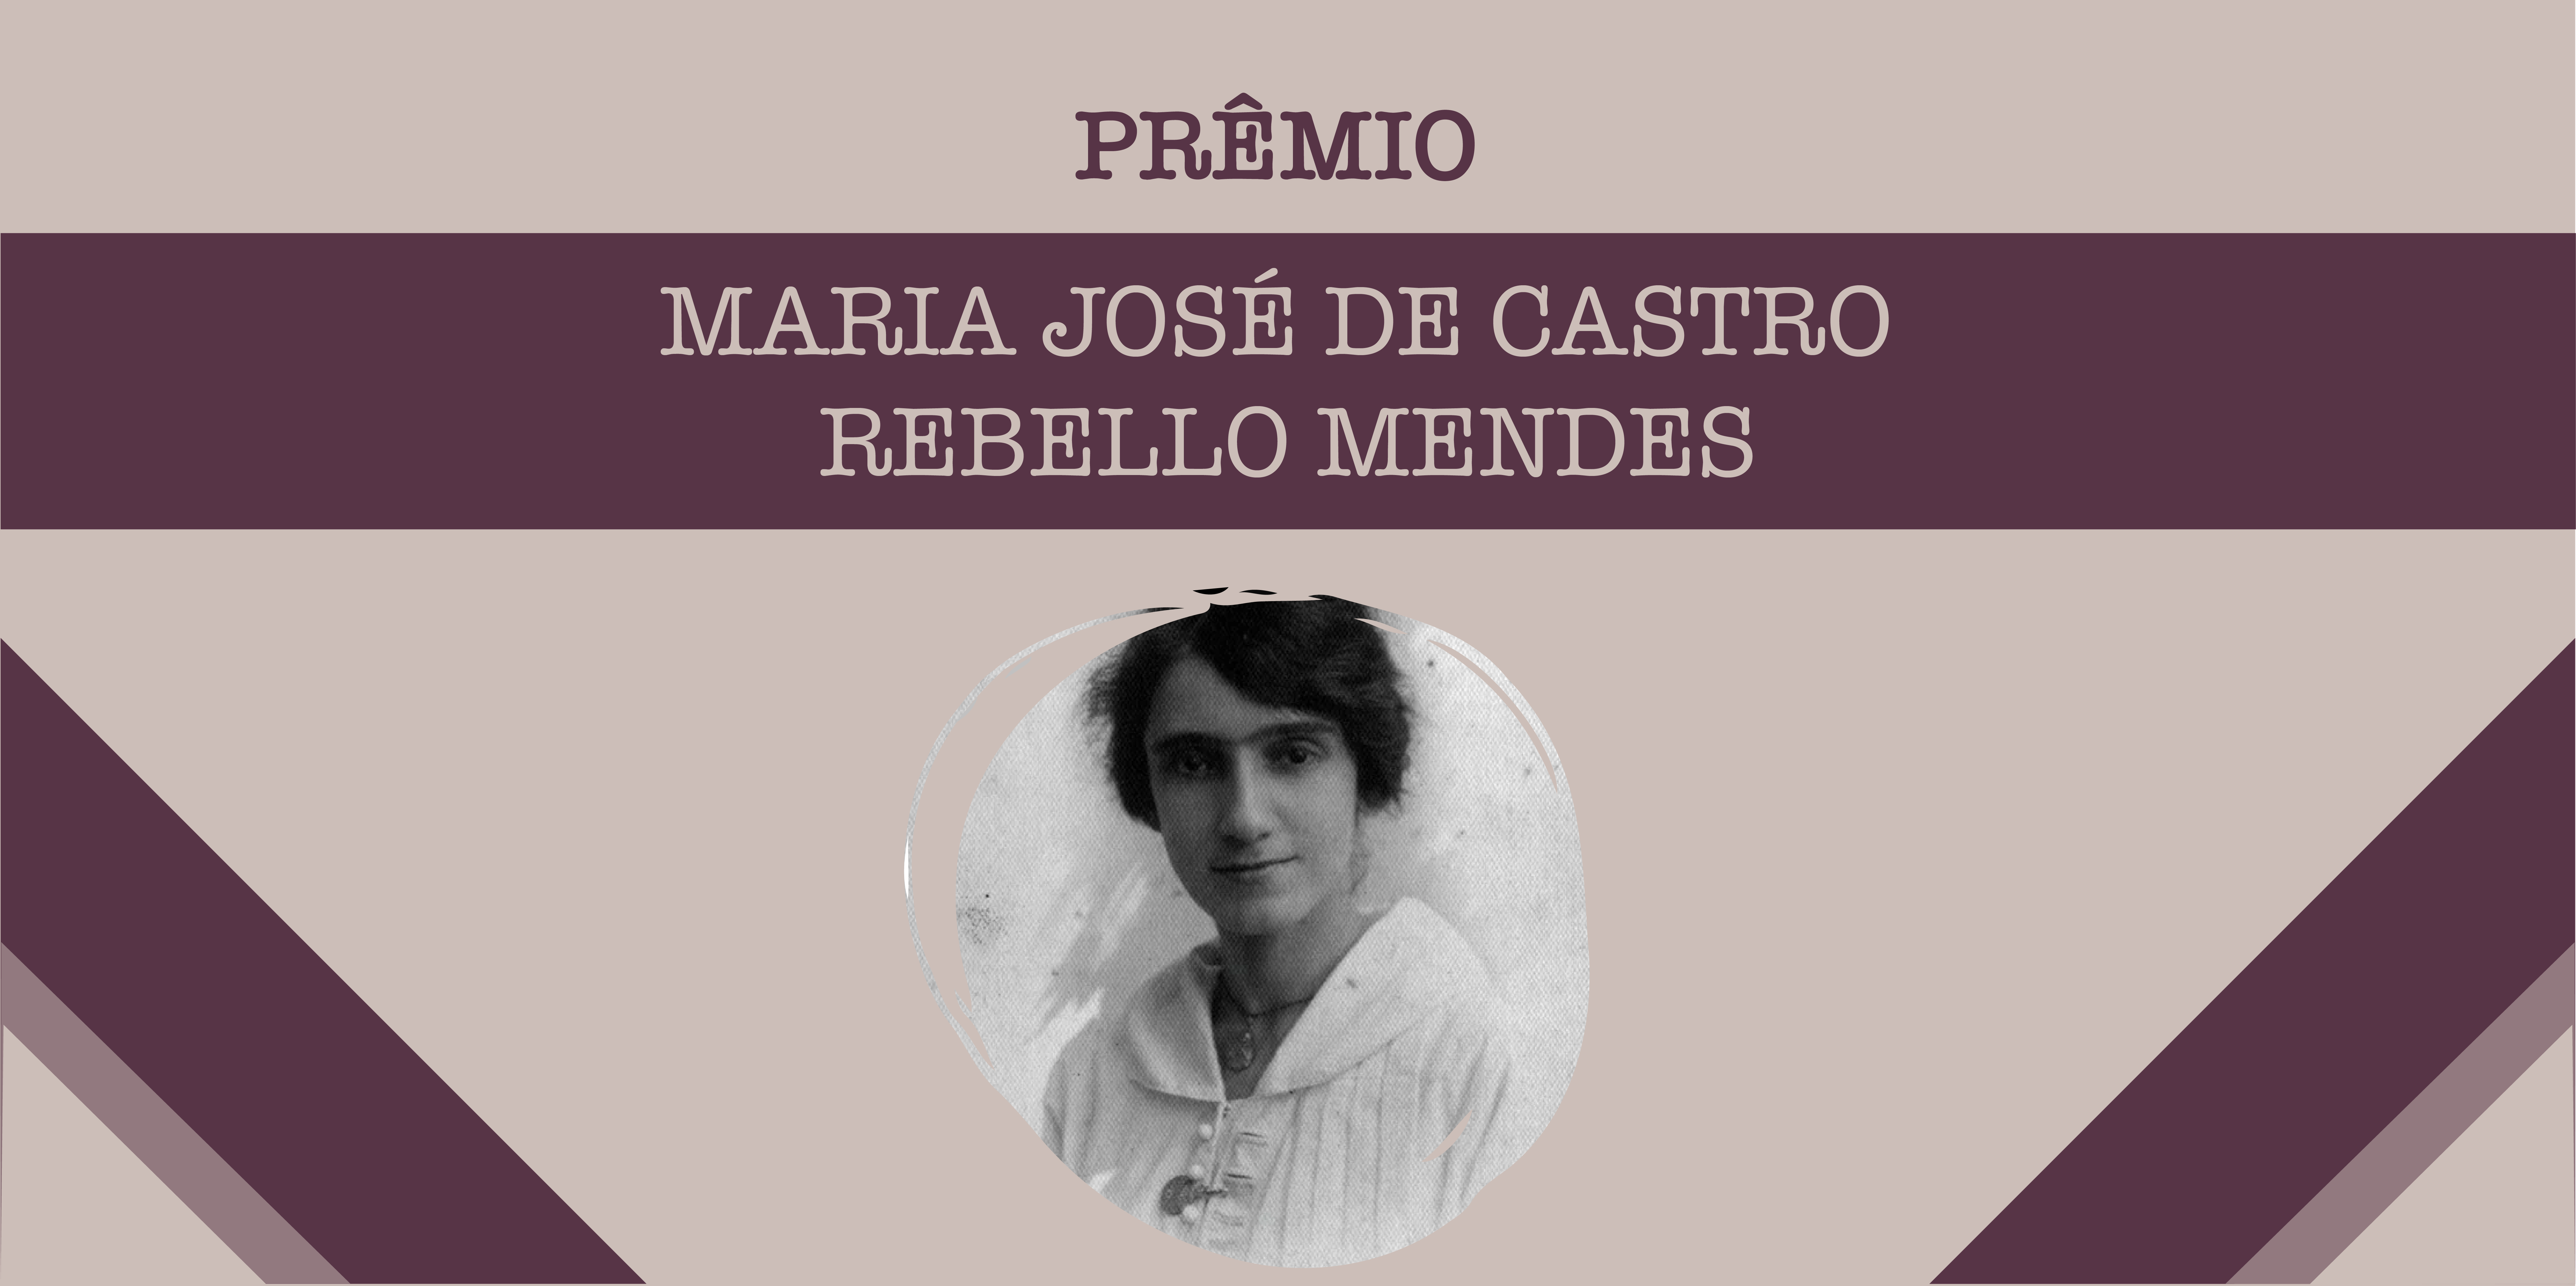 Prêmio Maria José de Castro Rebello Mendes vai contemplar estudantes e pesquisadoras